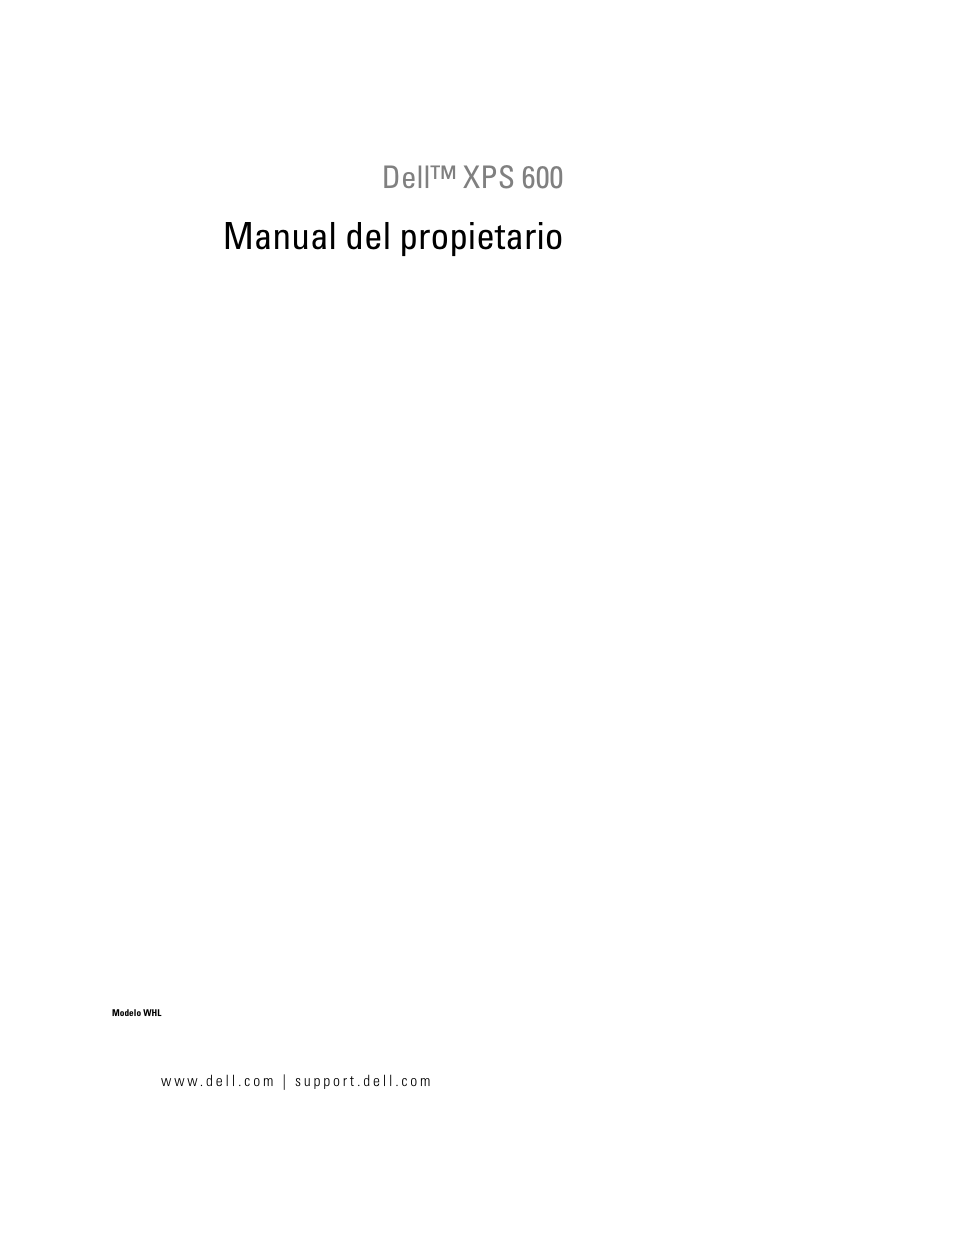 Dell XPS 600 Manual del usuario | Páginas: 178